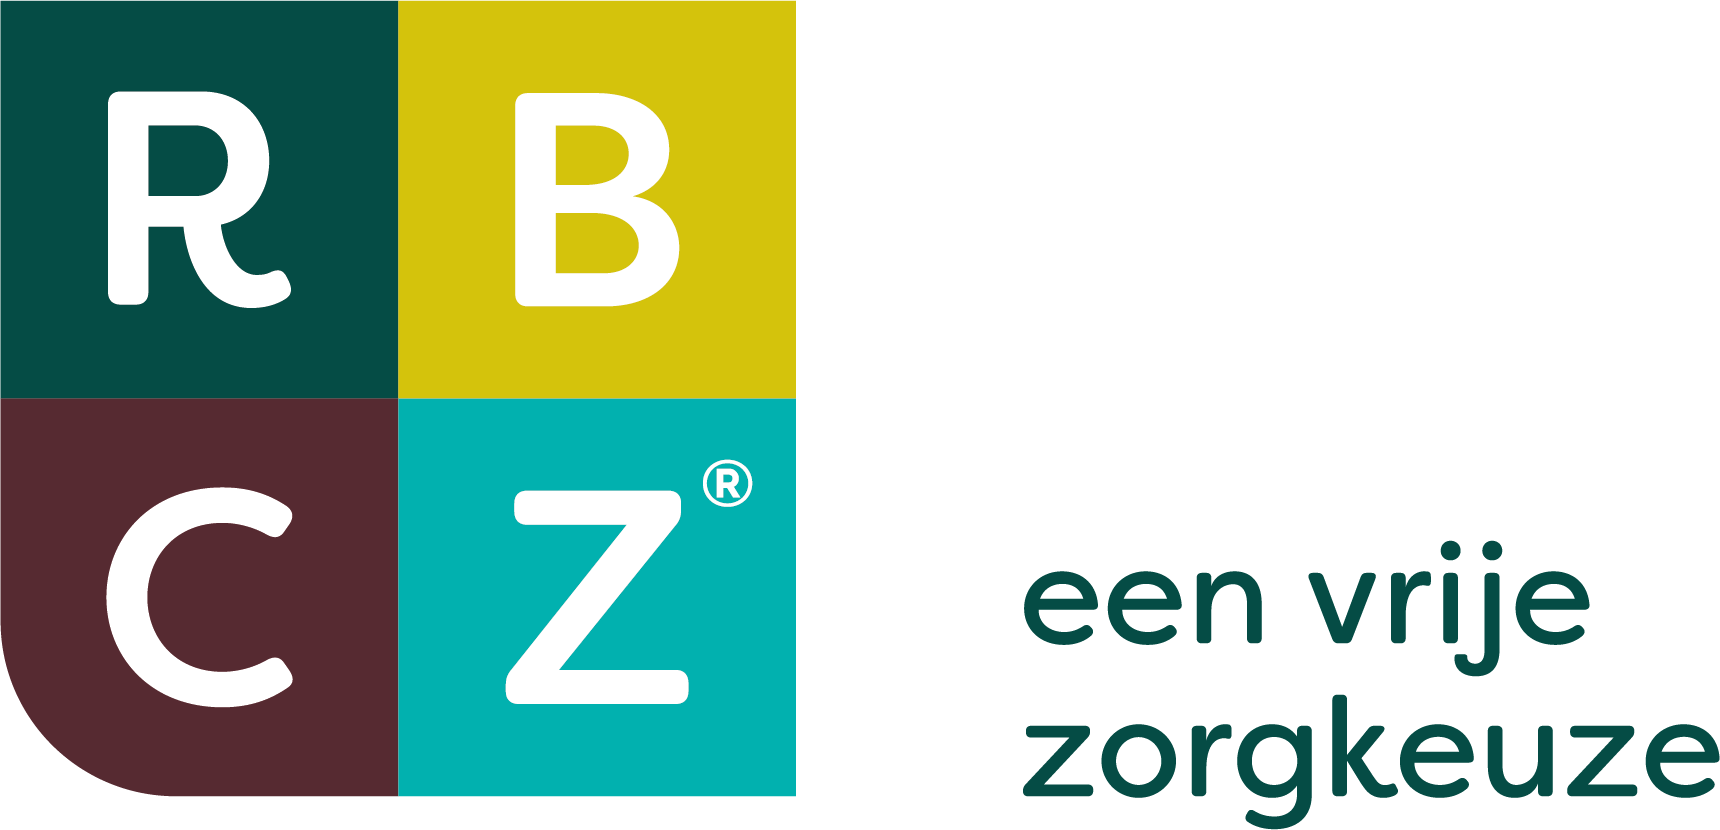 rbcz logo transp r new2